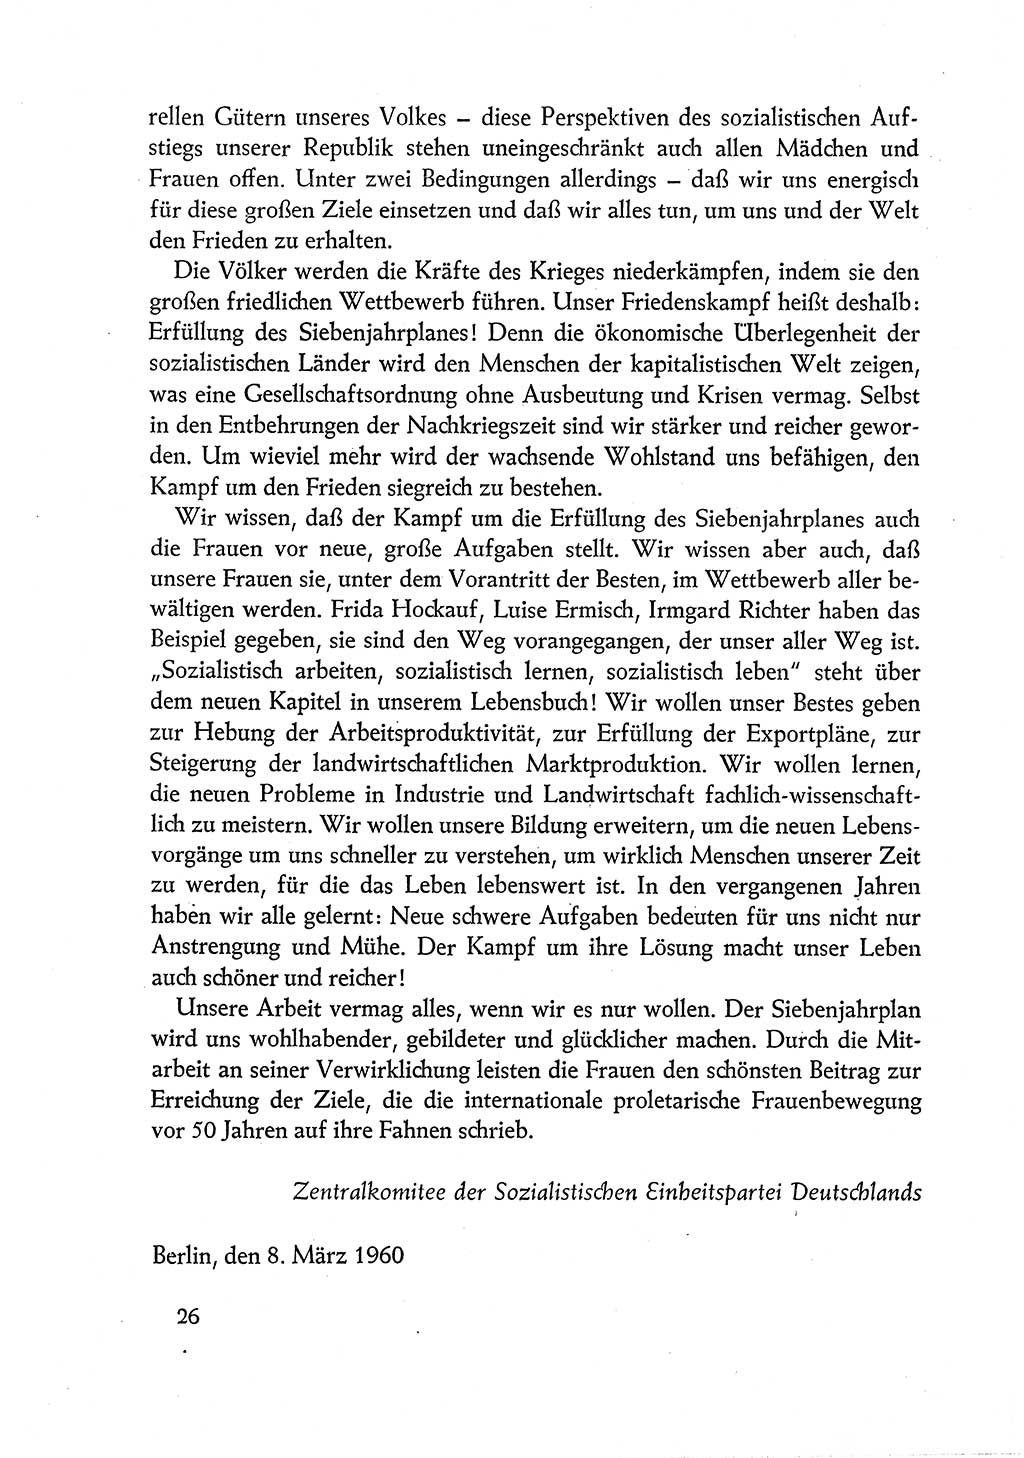 Dokumente der Sozialistischen Einheitspartei Deutschlands (SED) [Deutsche Demokratische Republik (DDR)] 1960-1961, Seite 26 (Dok. SED DDR 1960-1961, S. 26)